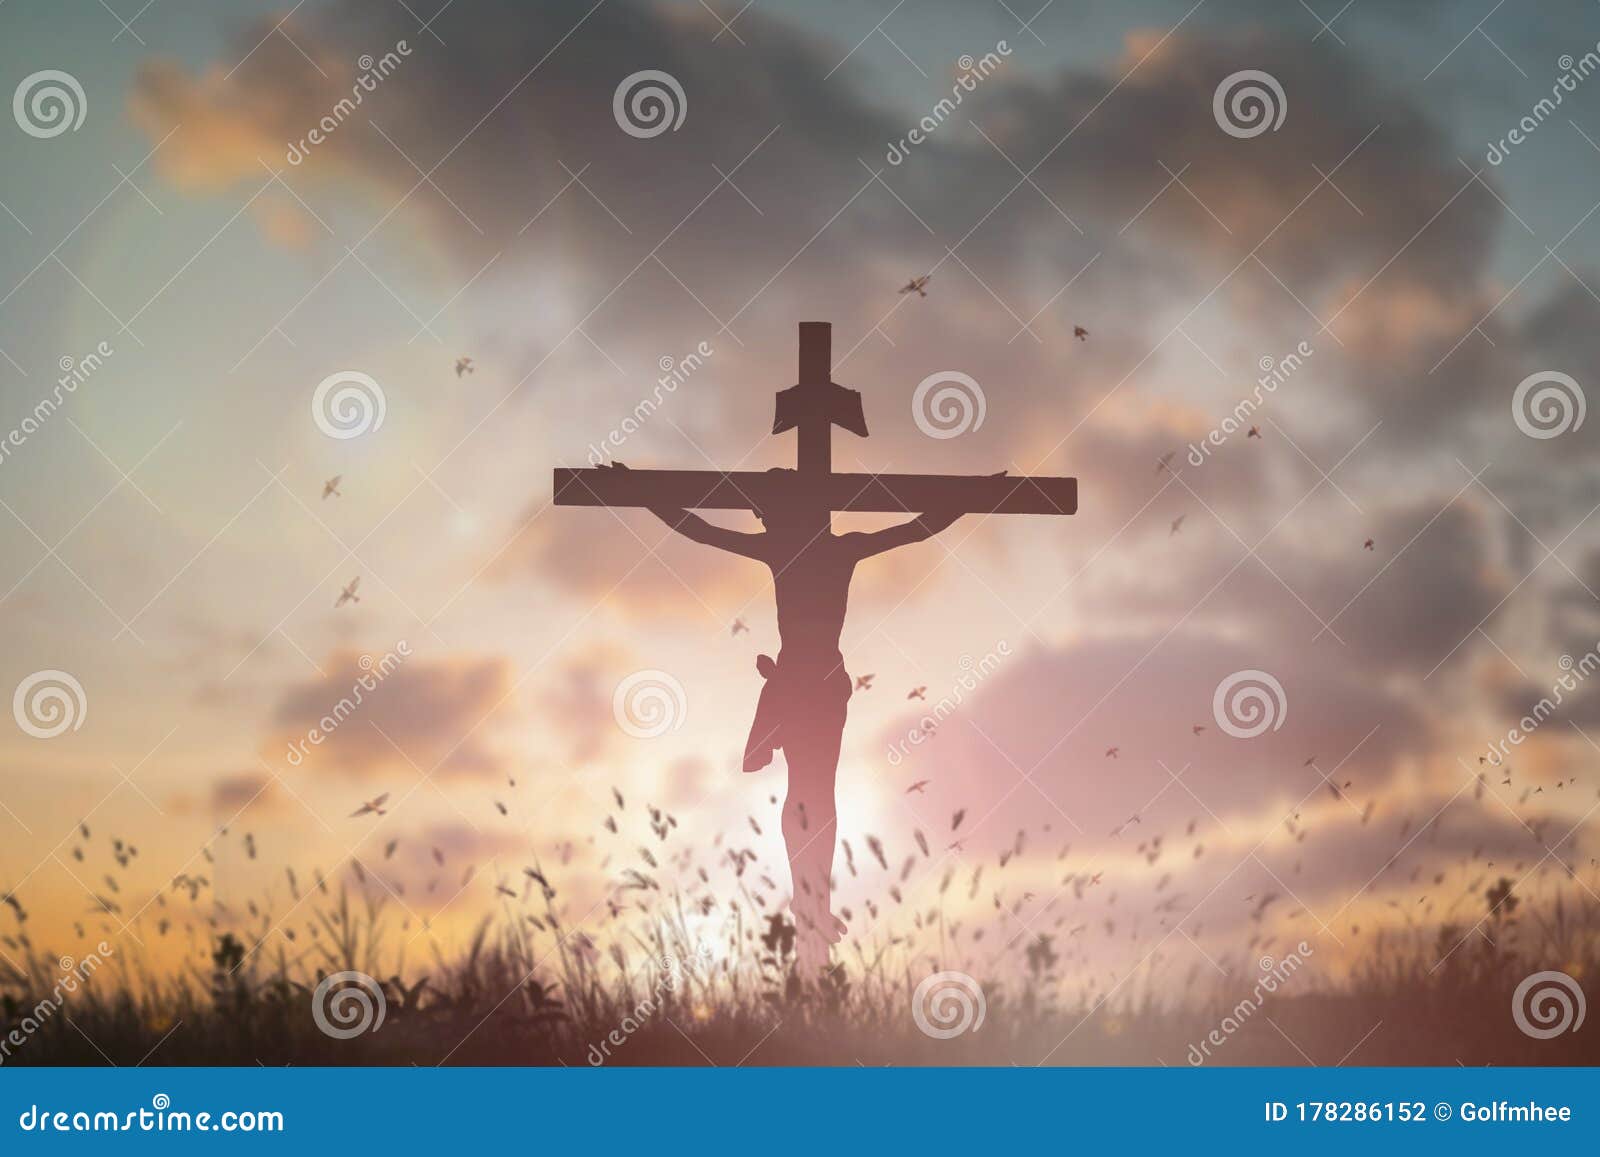 Silhouette Jesus ChristÂ deathÂ on Cross Crucifixion on Calvary ...